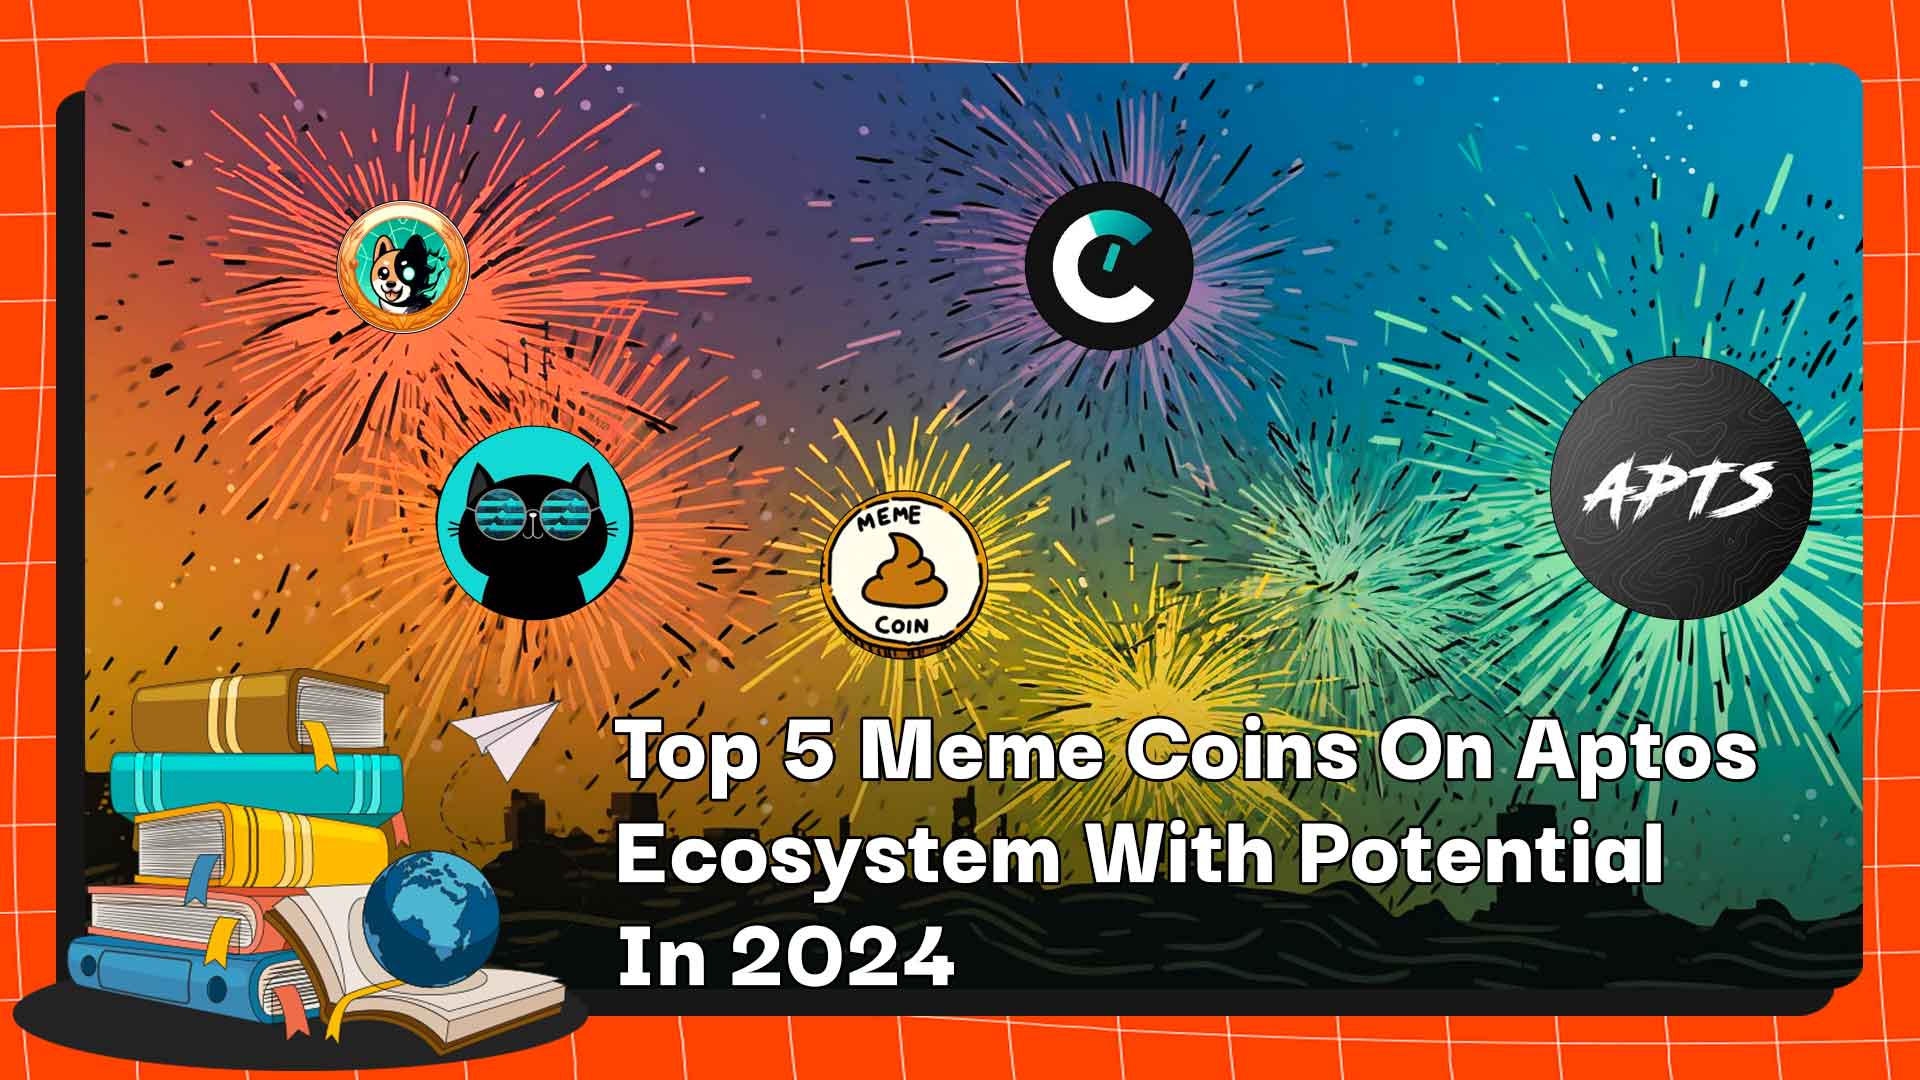 As 5 principais moedas meme do ecossistema Aptos com potencial em 2024